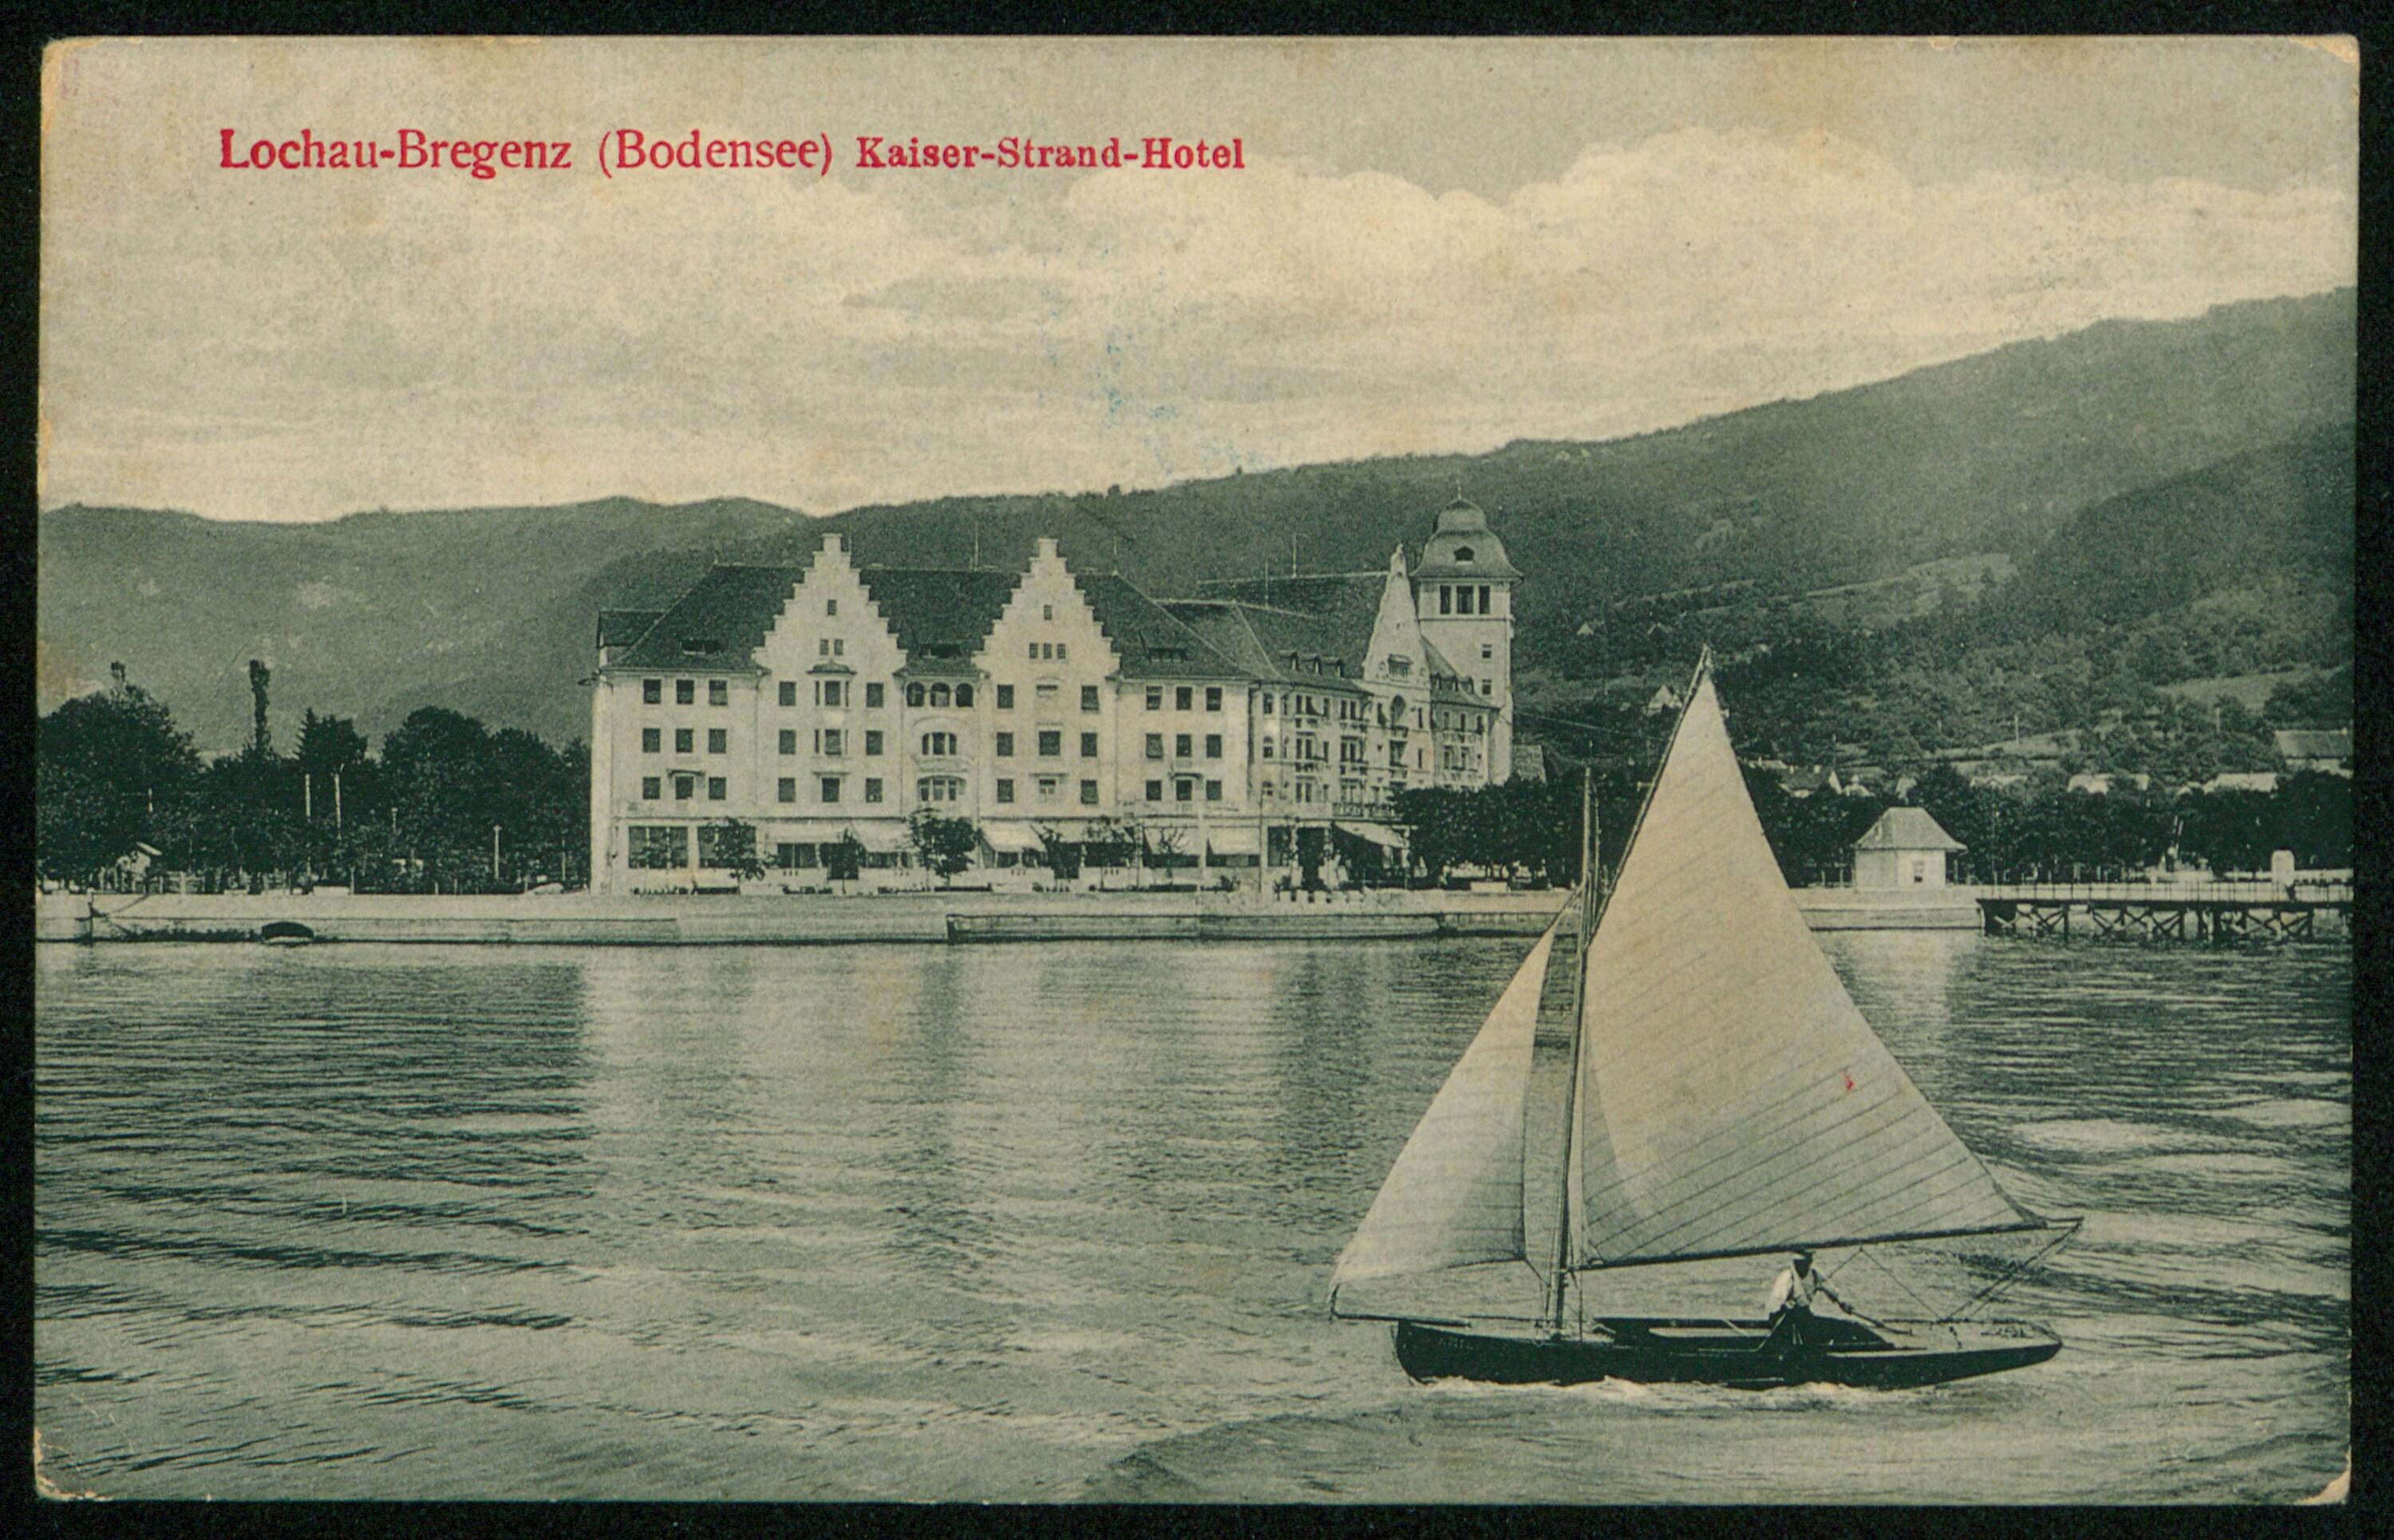 Lochau-Bregenz (Bodensee) Kaiser-Strand-Hotel></div>


    <hr>
    <div class=